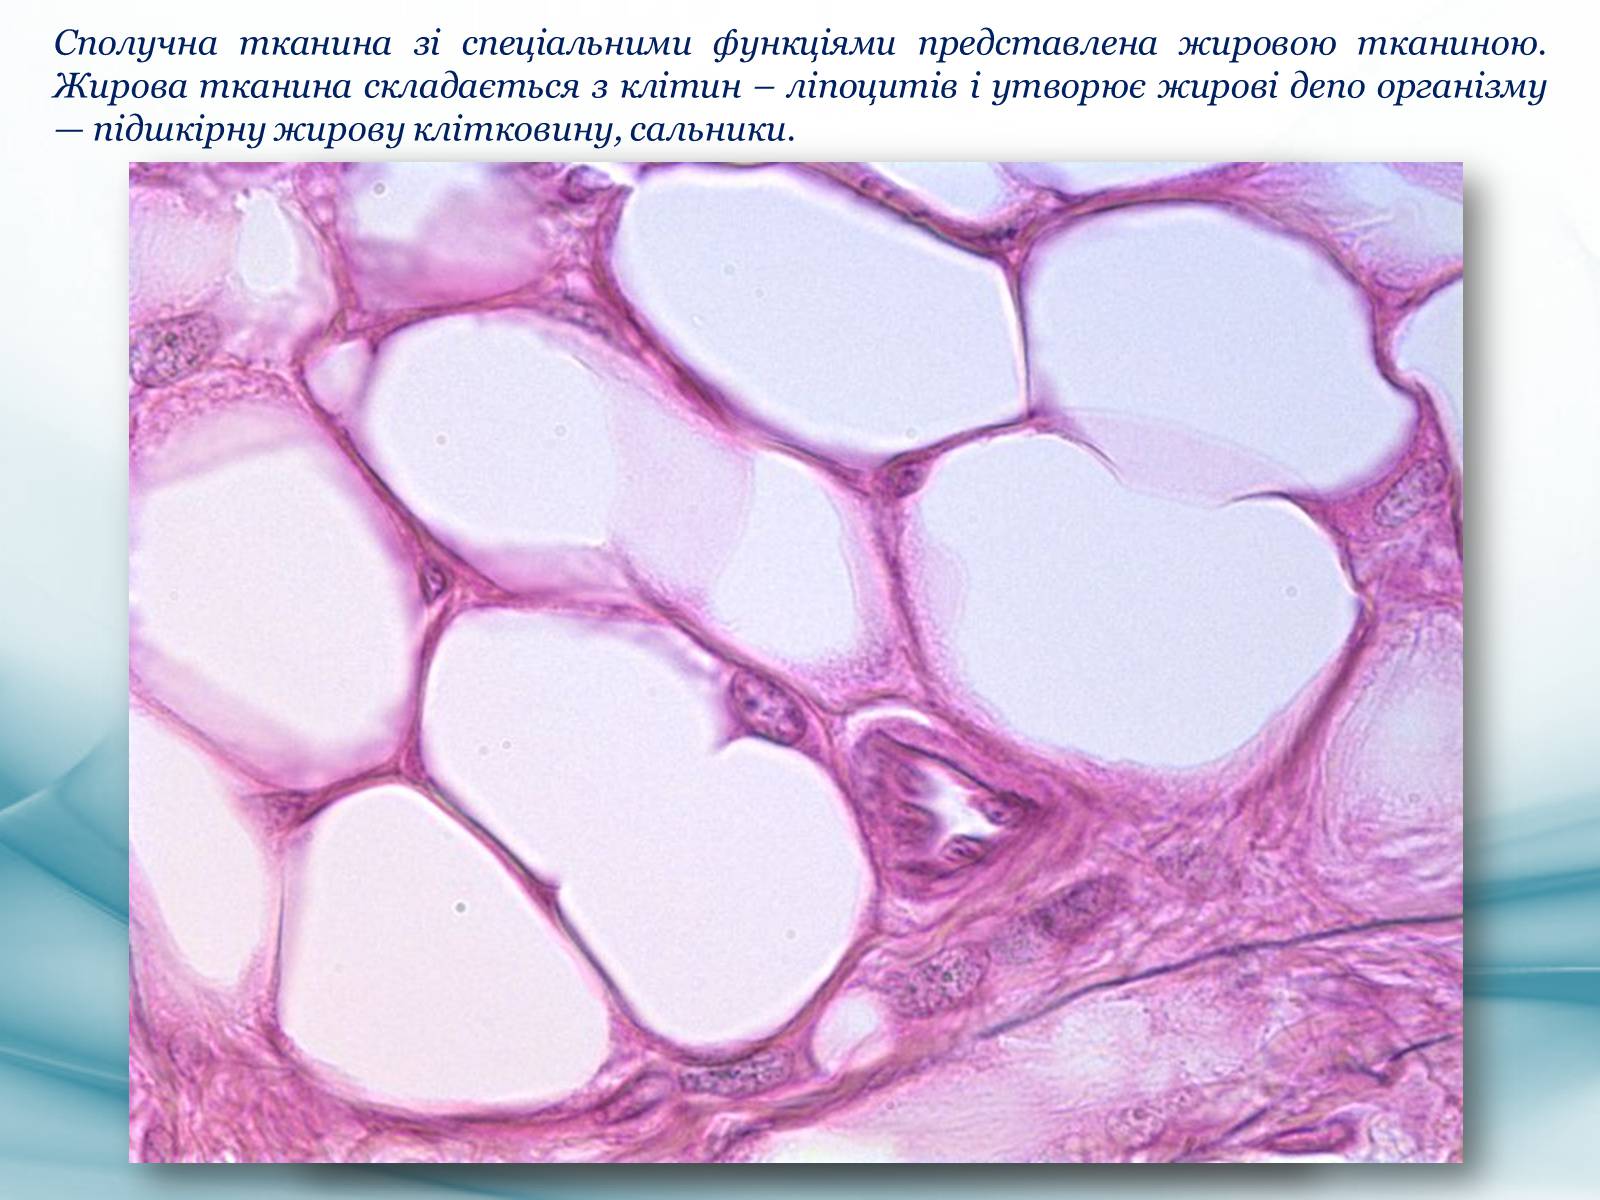 Бурая жировая клетка гистология